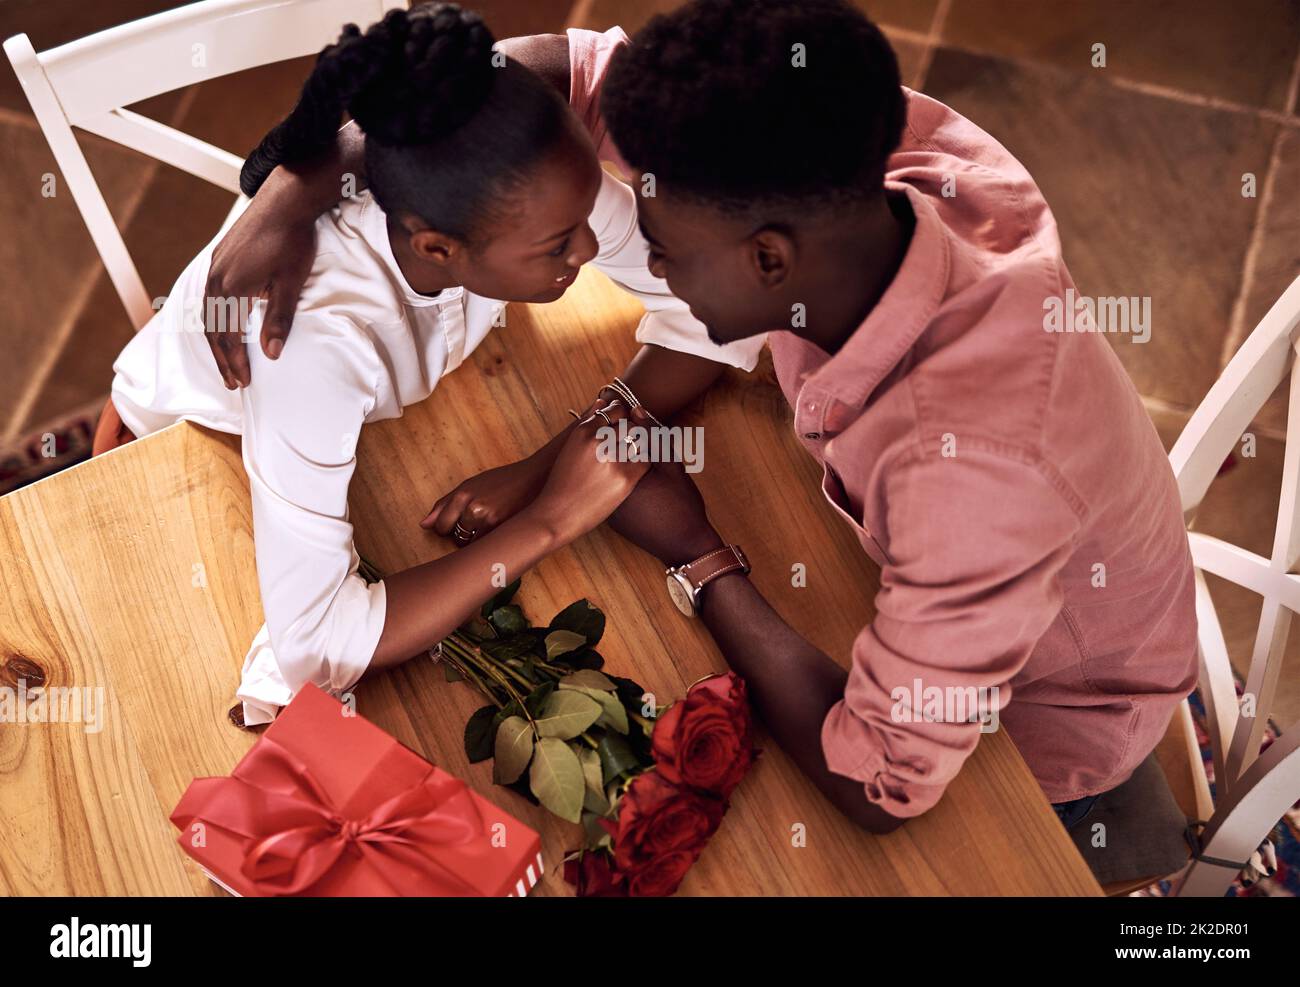 La Saint Valentin ne s'améliore pas. Photo en grand angle d'un jeune couple affectueux tenant les mains intimement lorsqu'il est assis dans sa cuisine le jour de la Saint-Valentin. Banque D'Images